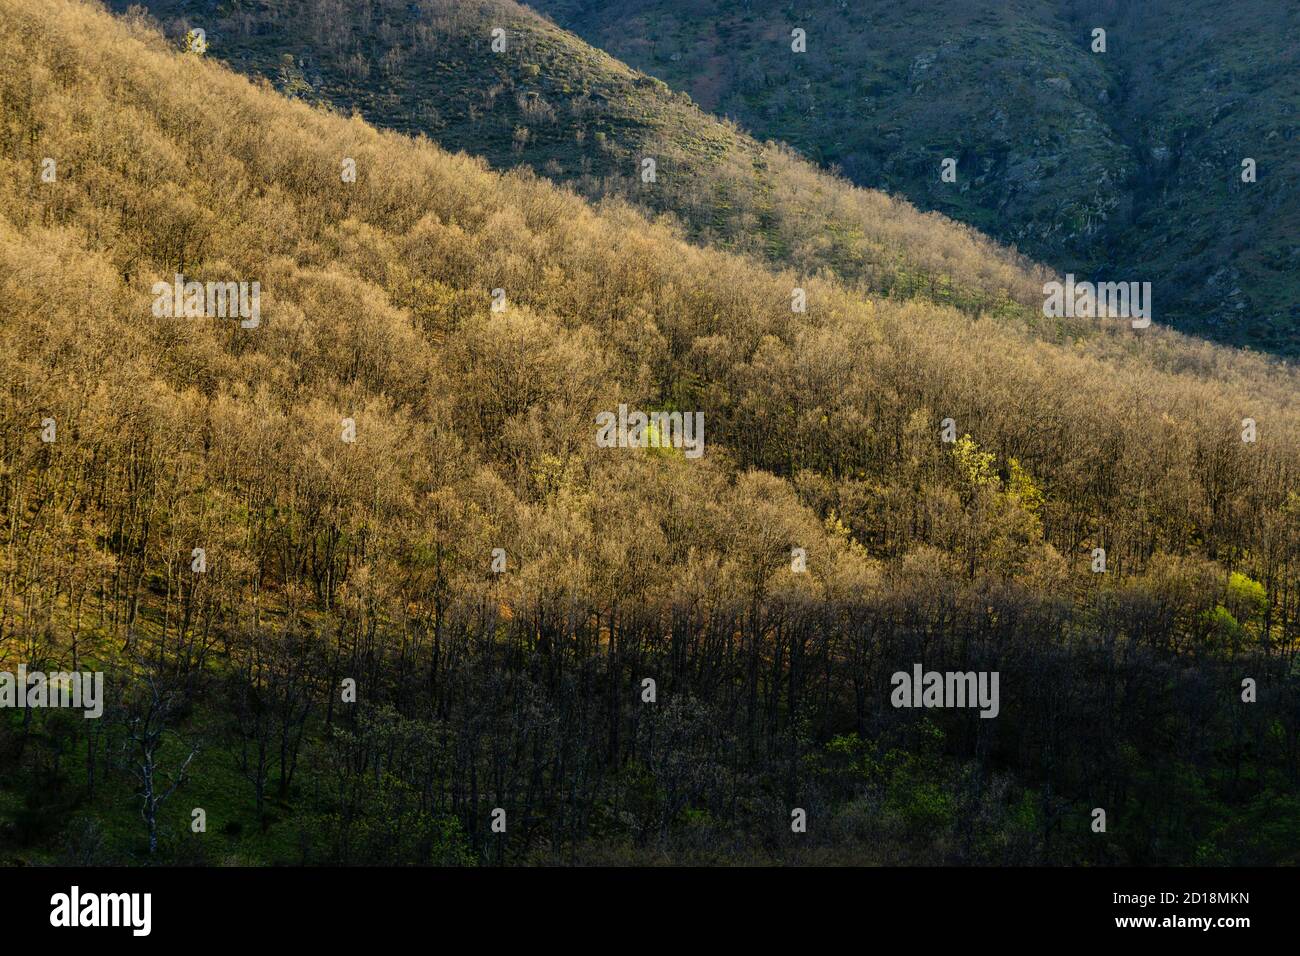 bosque caducifolio, reserva natural Garganta de los Infiernos, sierra de Tormantos, valle del Jerte, Cáceres, Extremadura, Spain, europa Stock Photo